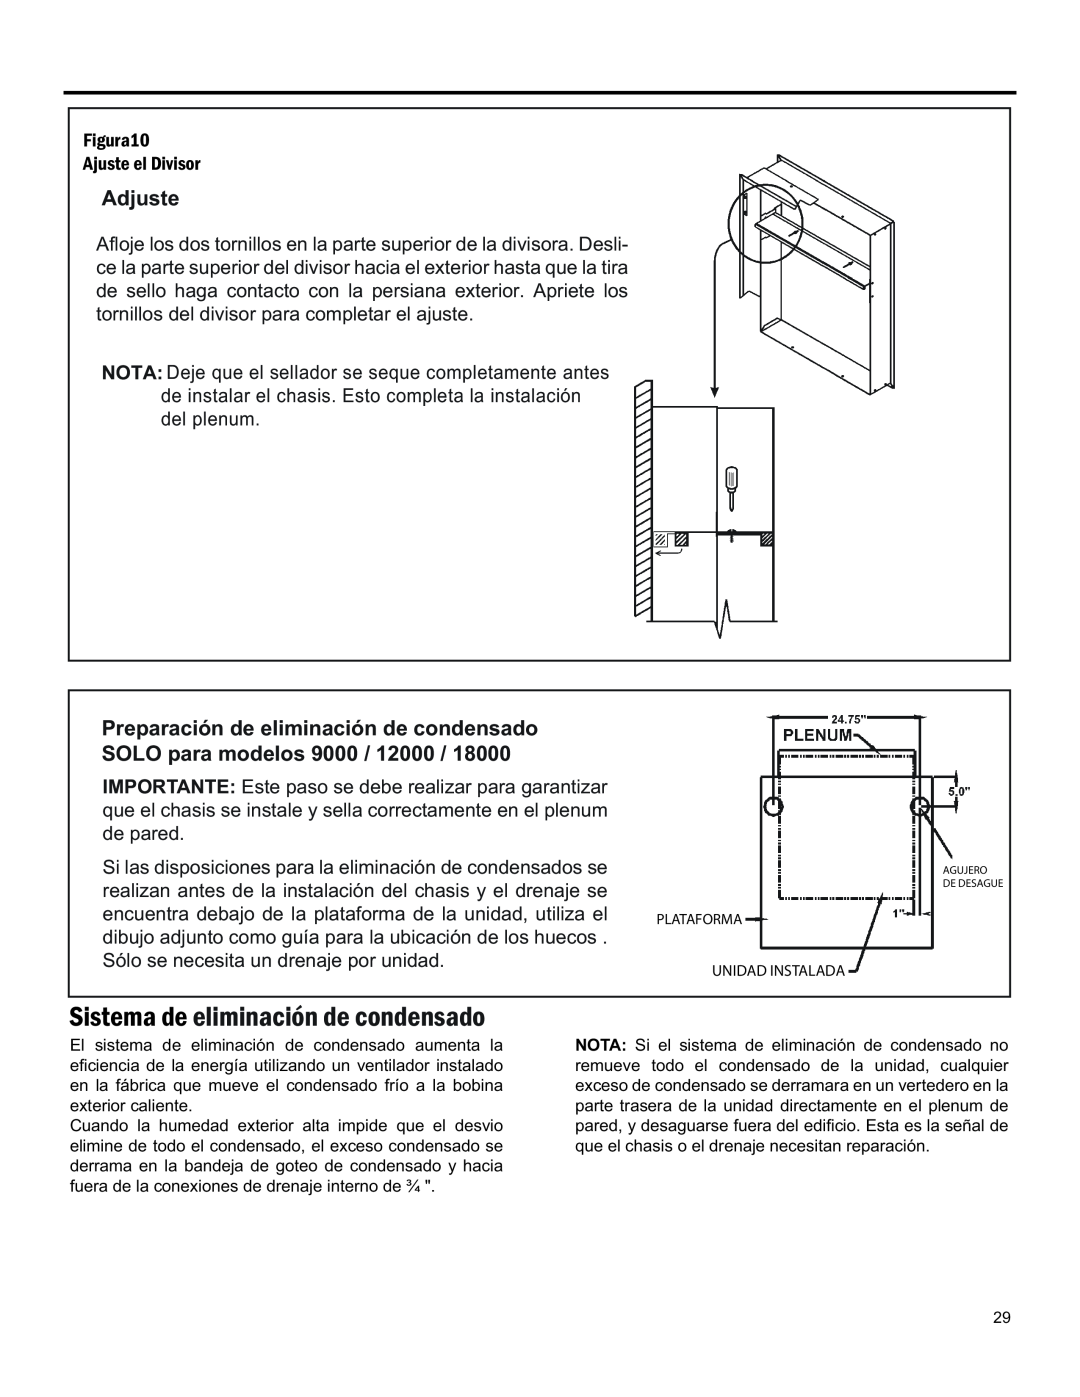 Friedrich 920-075-13 (1-11) operation manual Adjuste, Sistema De Eliminación De Condensado 